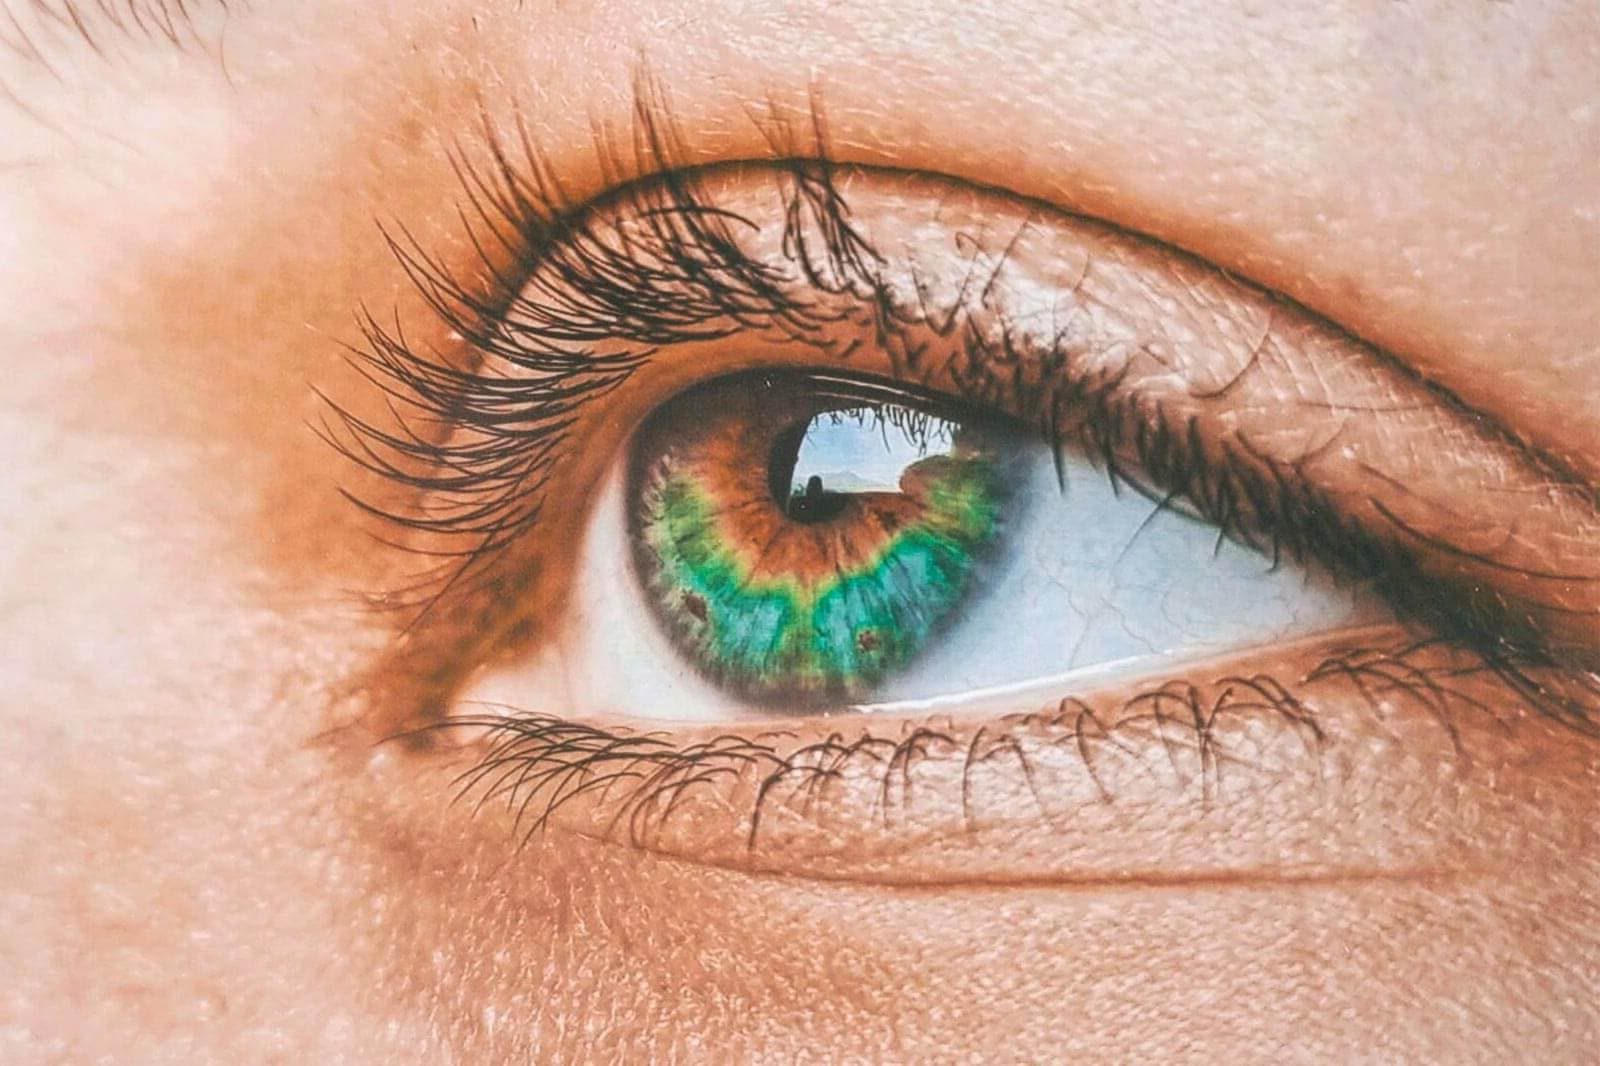 muti-colored eye iris